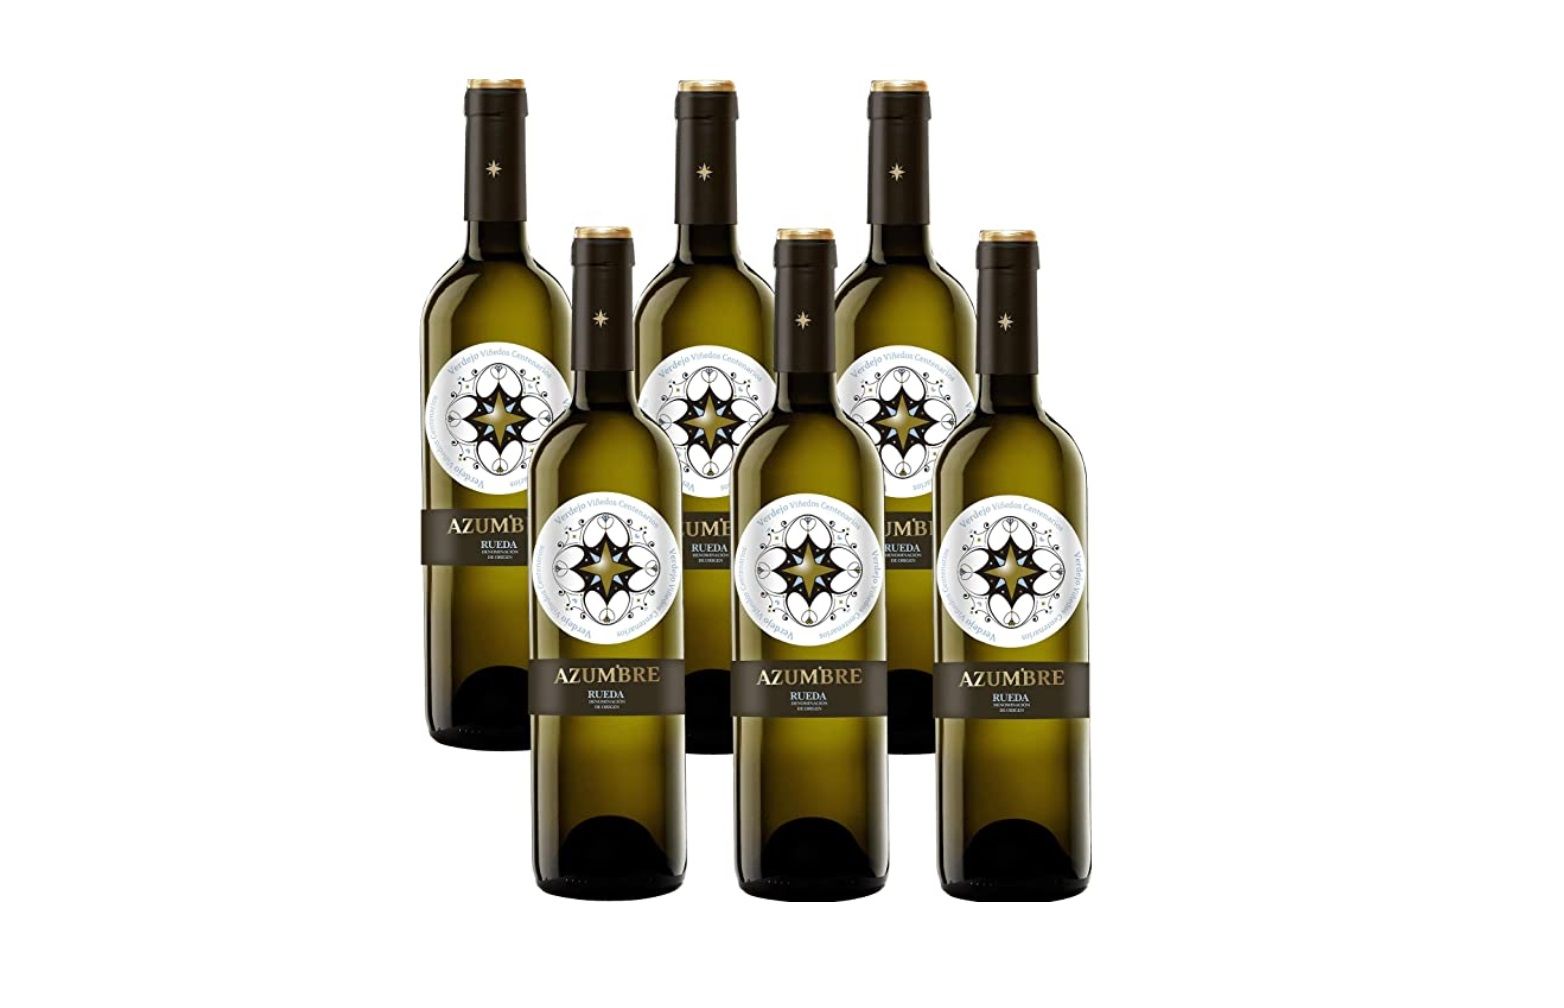 ¡Chollo! Pack de 6 botellas de vino blanco Azumbre Rueda por sólo 20,94€ (antes 40,61€)